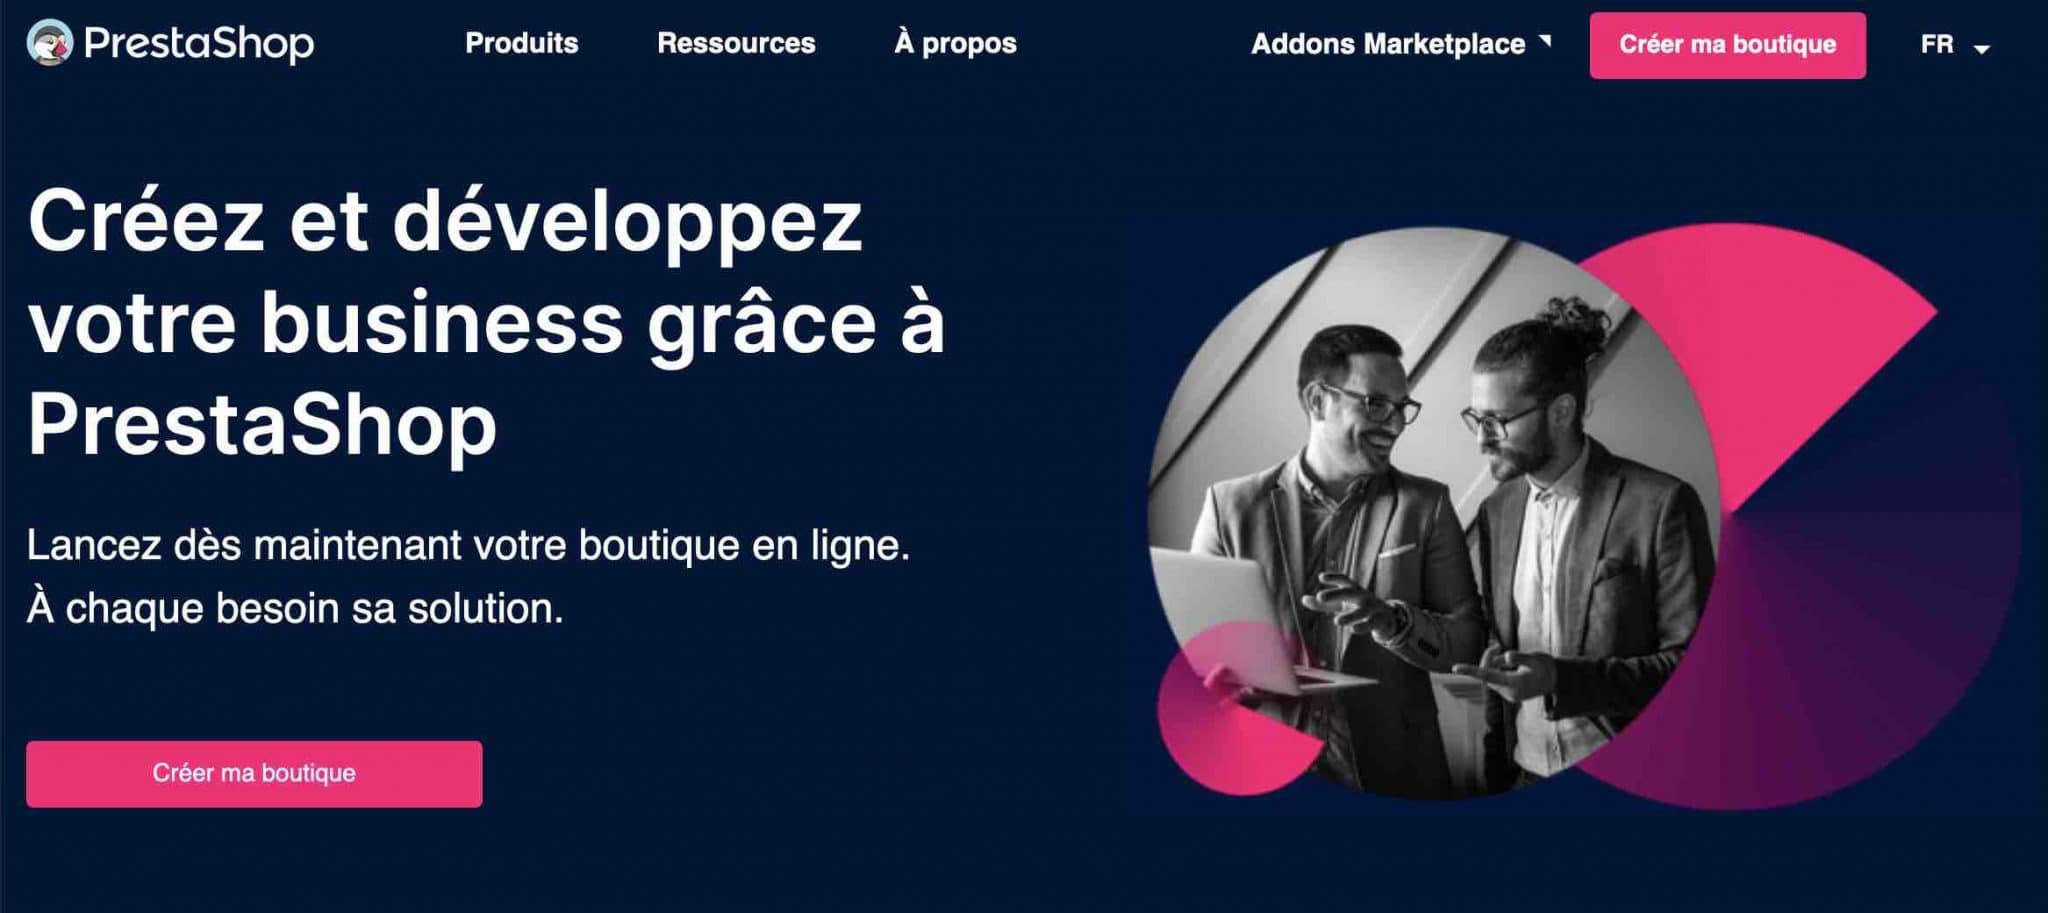 PrestaShop est une solution e-commerce française.